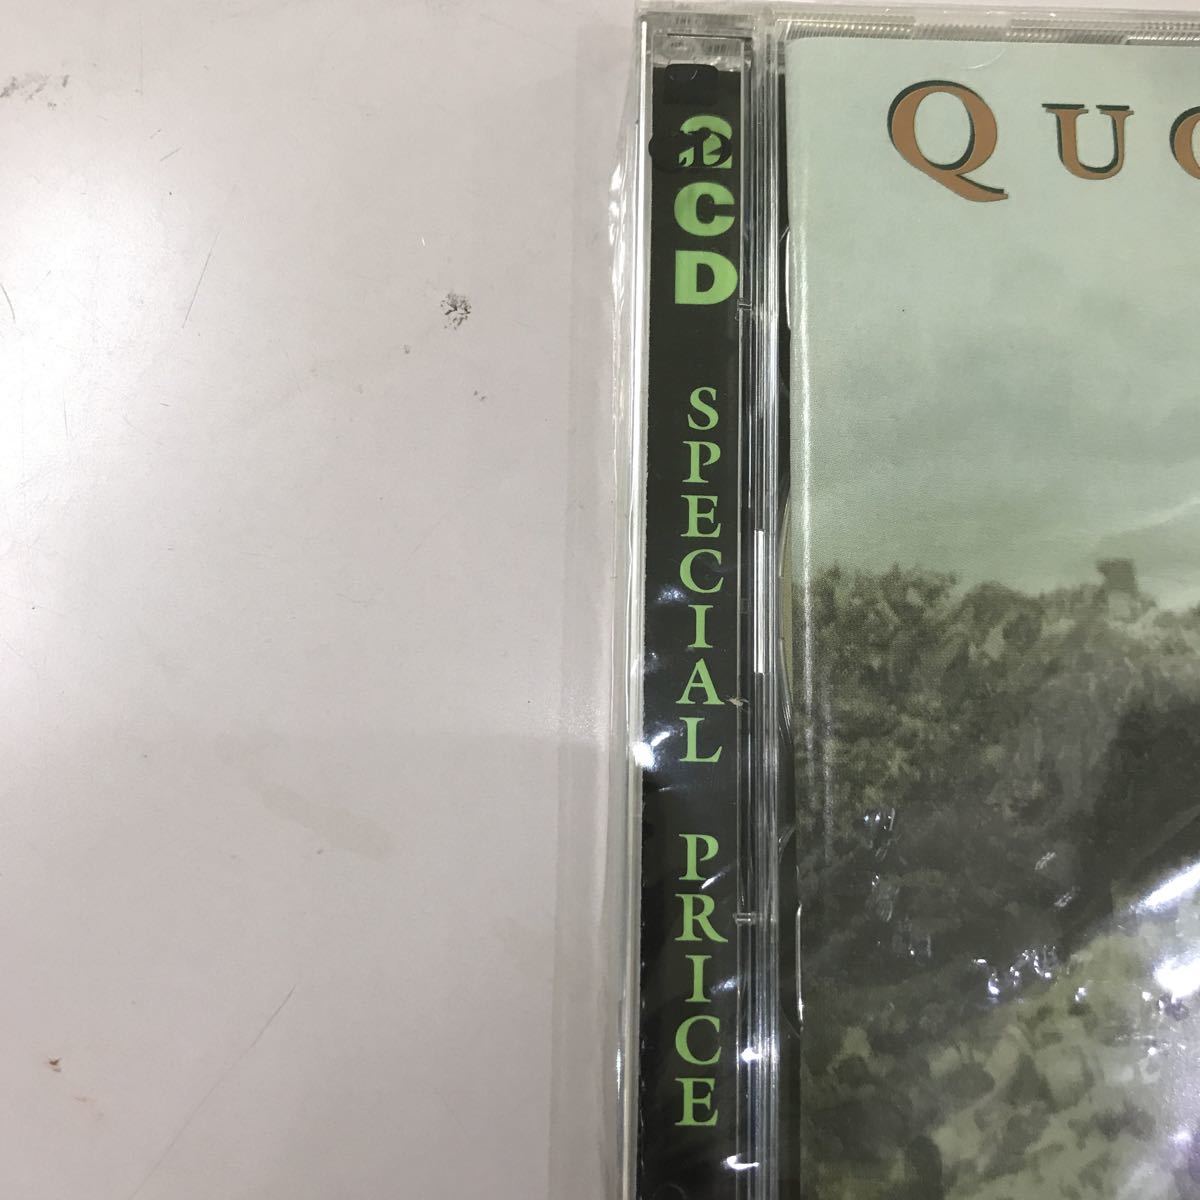 CD 輸入盤未開封【洋楽】長期保存品　QUORTHON